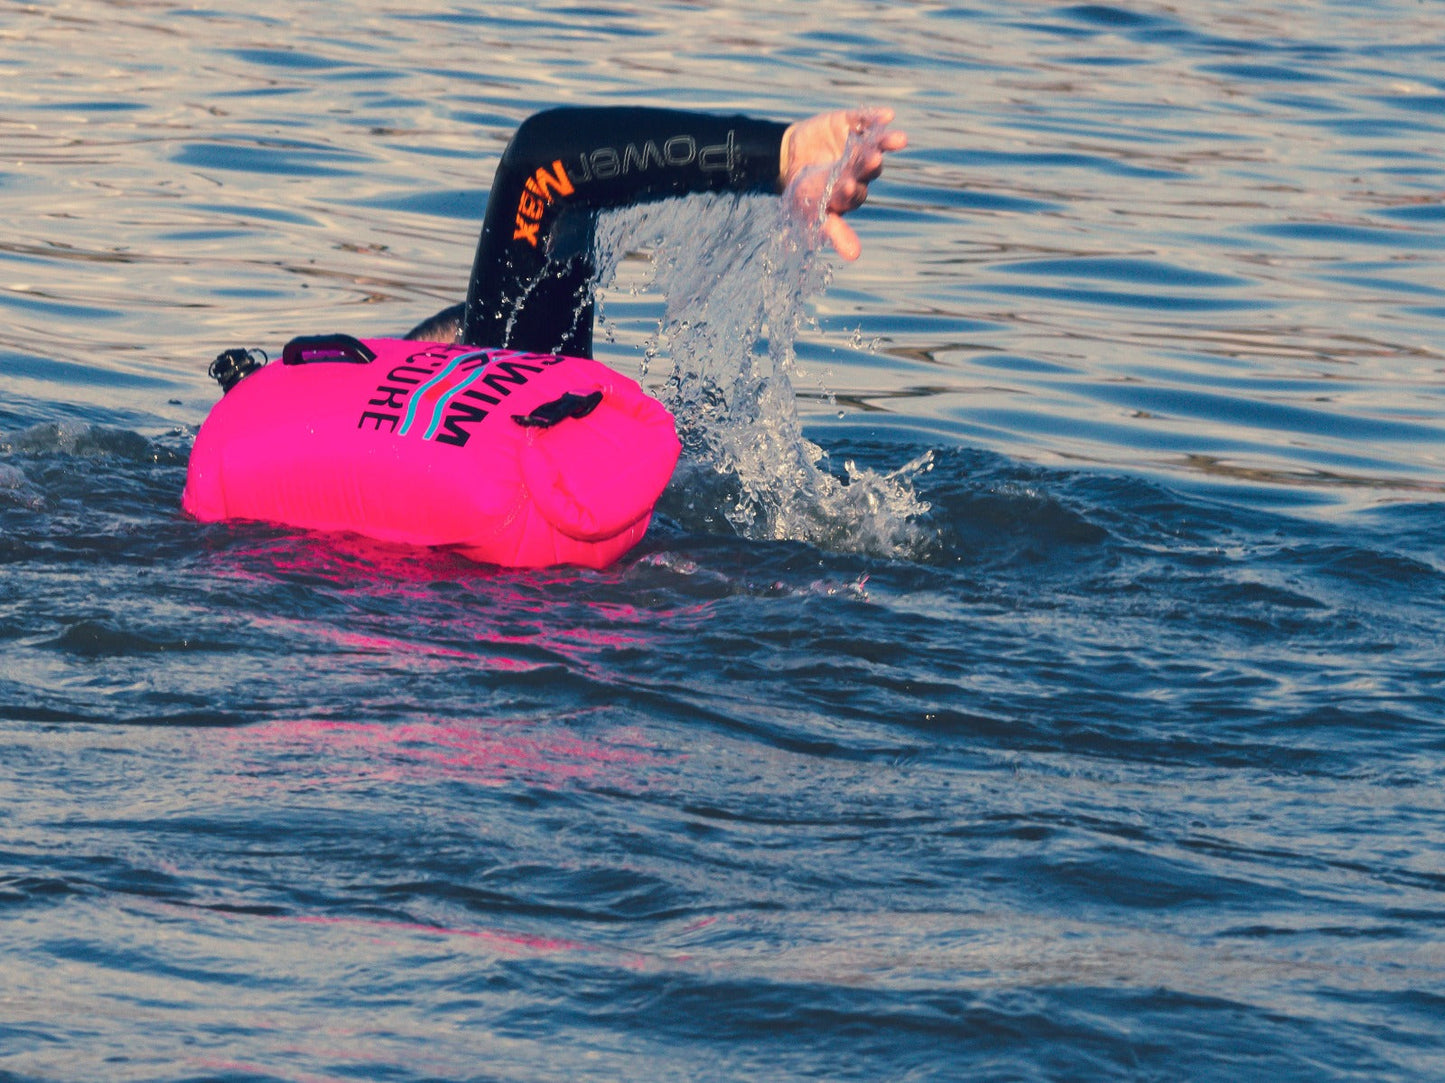 Pink 28L Dry Bag Swim Buoy